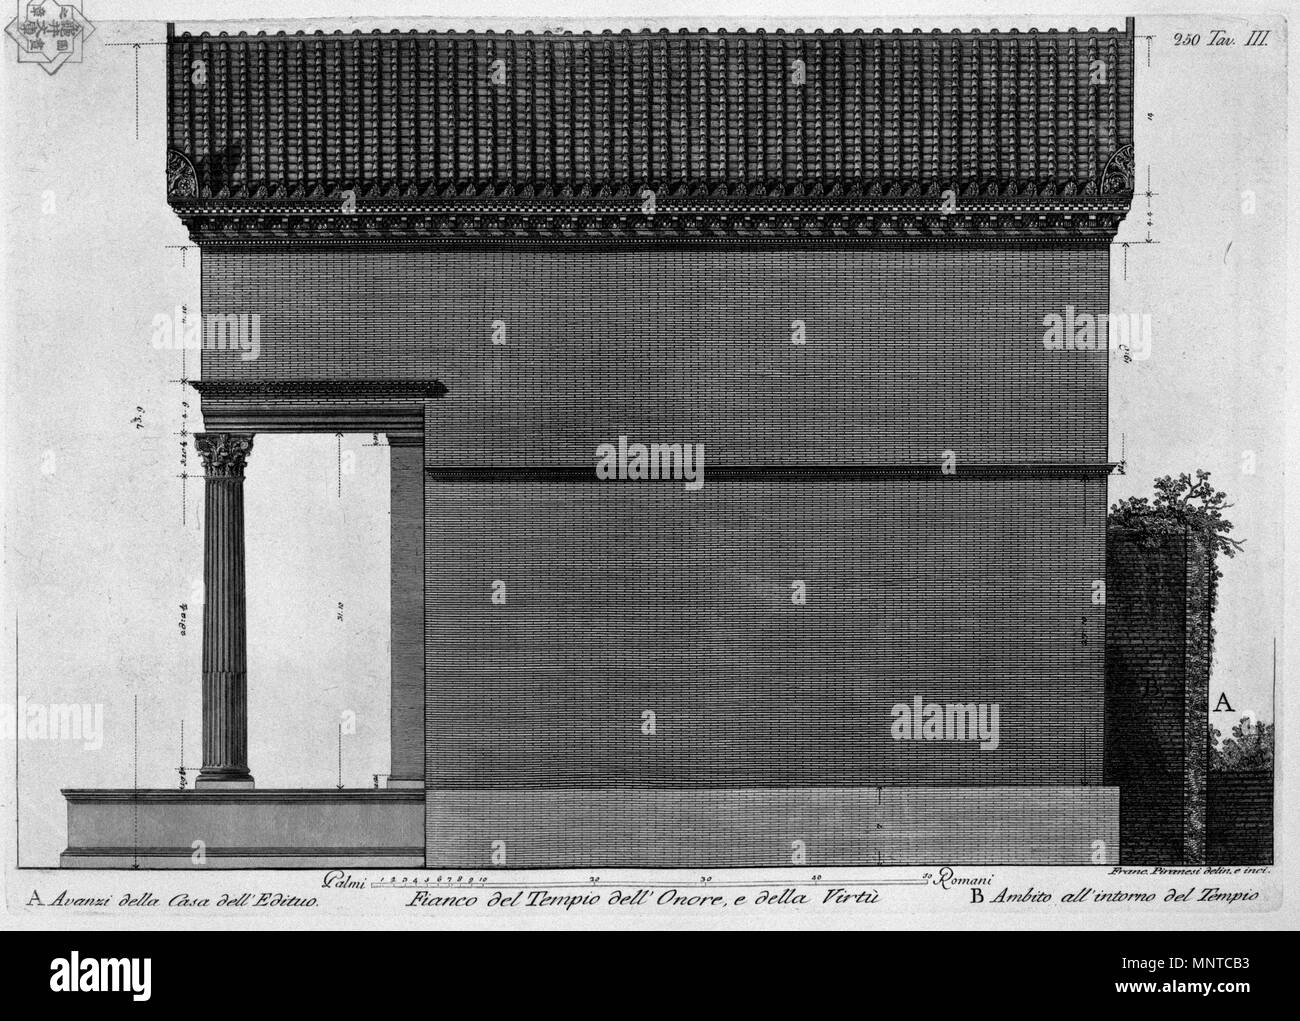 Fianco del Tempio dell' Onore, e della Virtù   1780.   1003 Piranesi-6017 Stock Photo